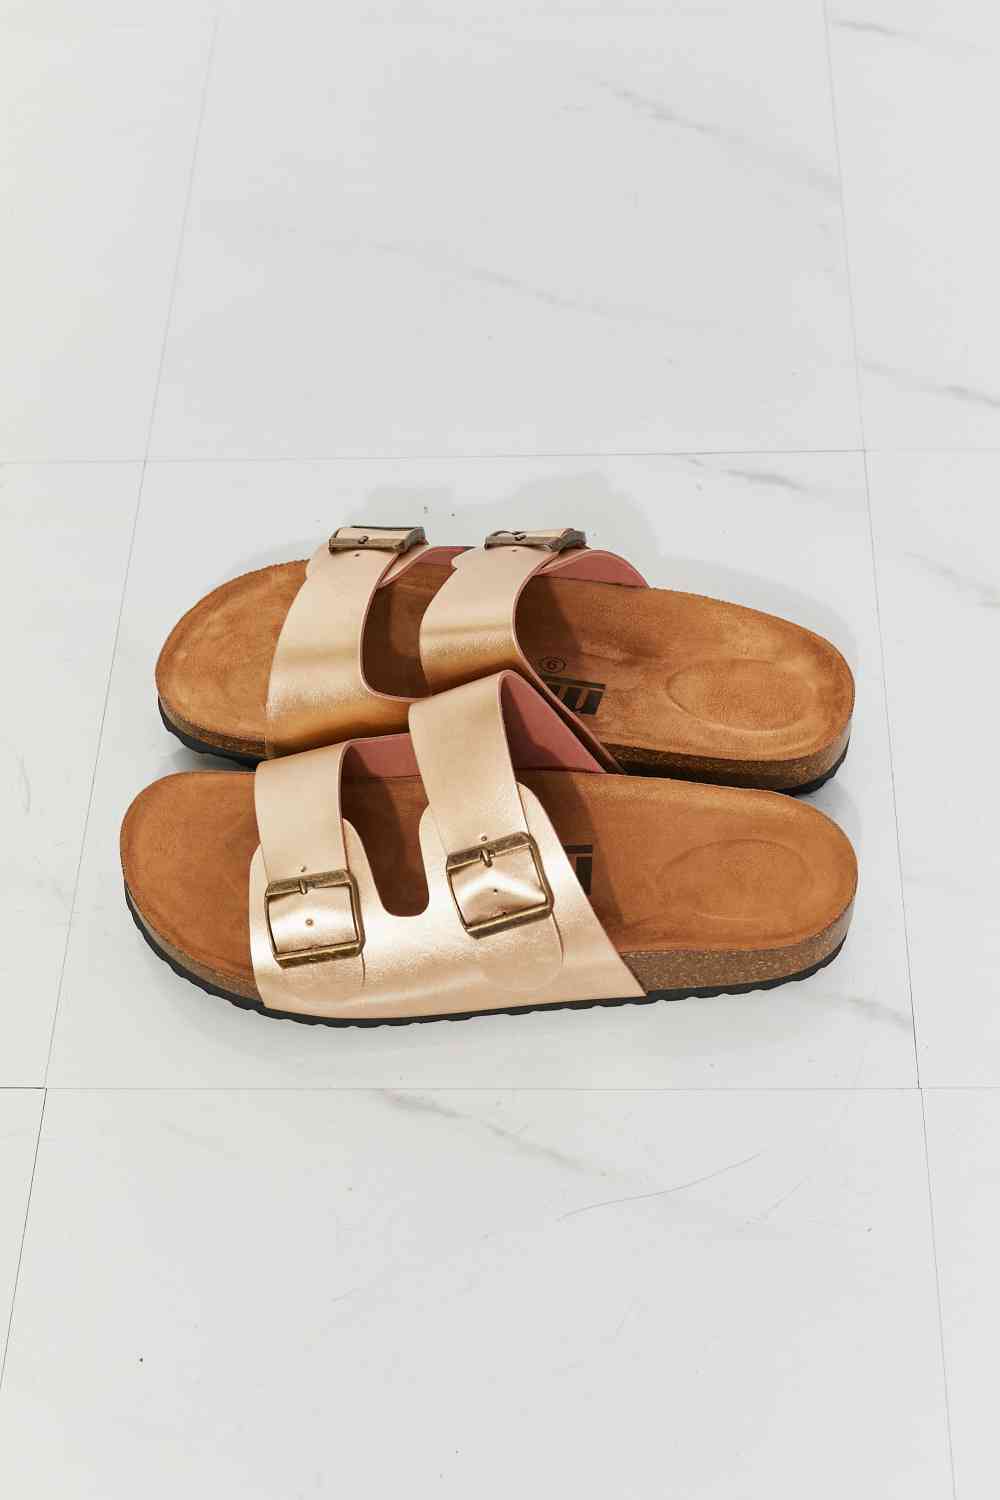 MM Shoes Best Life Double-Banded Slide Sandal